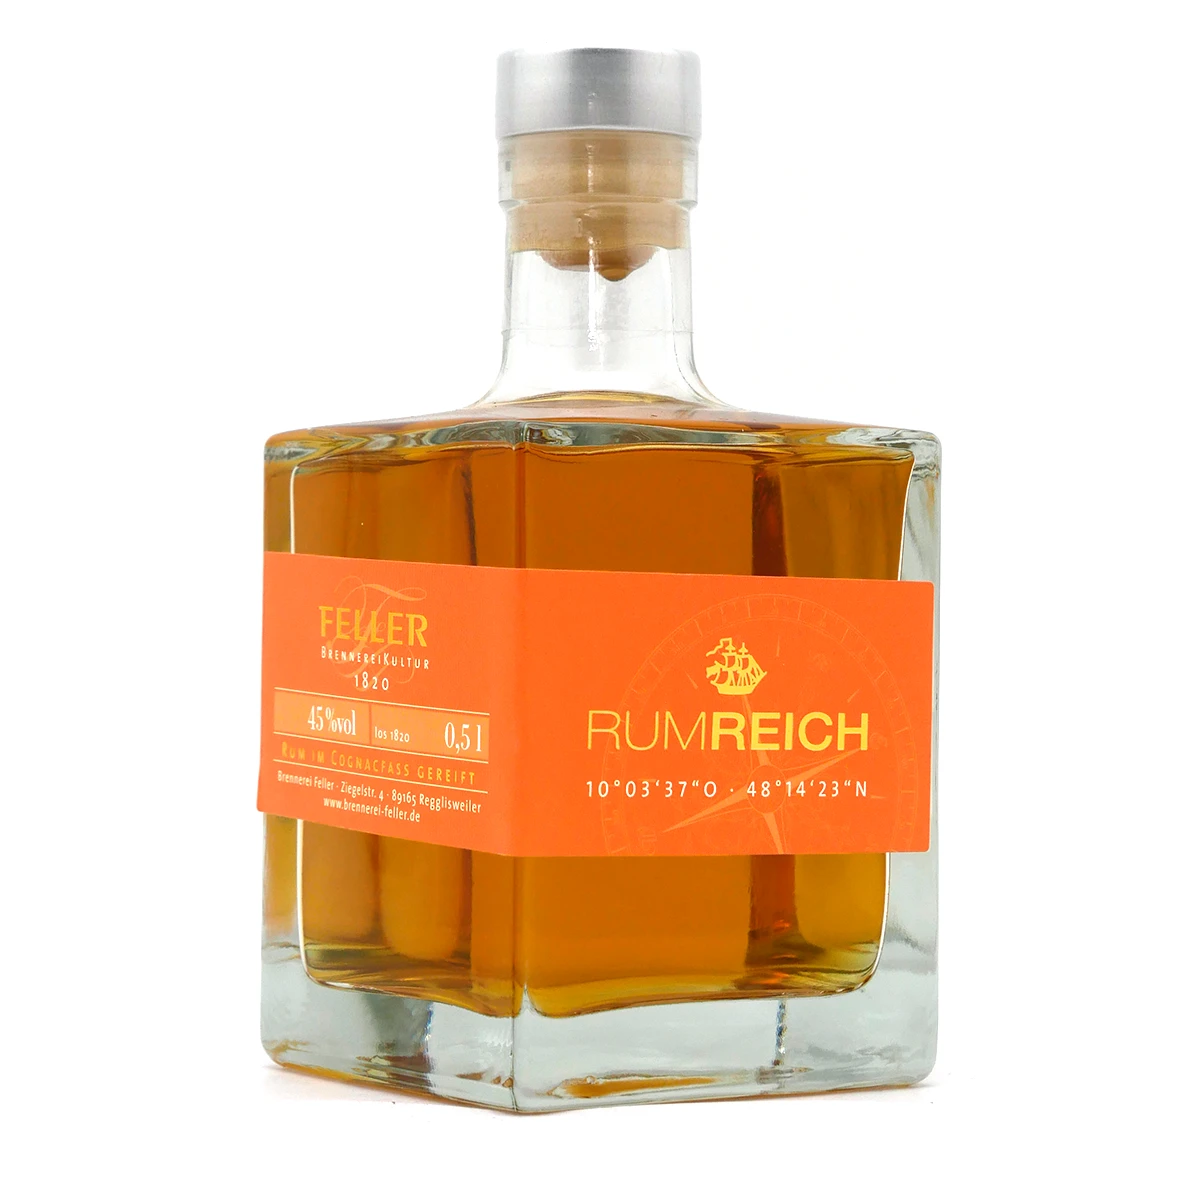 RUMREICH Cognac Cask | Feller